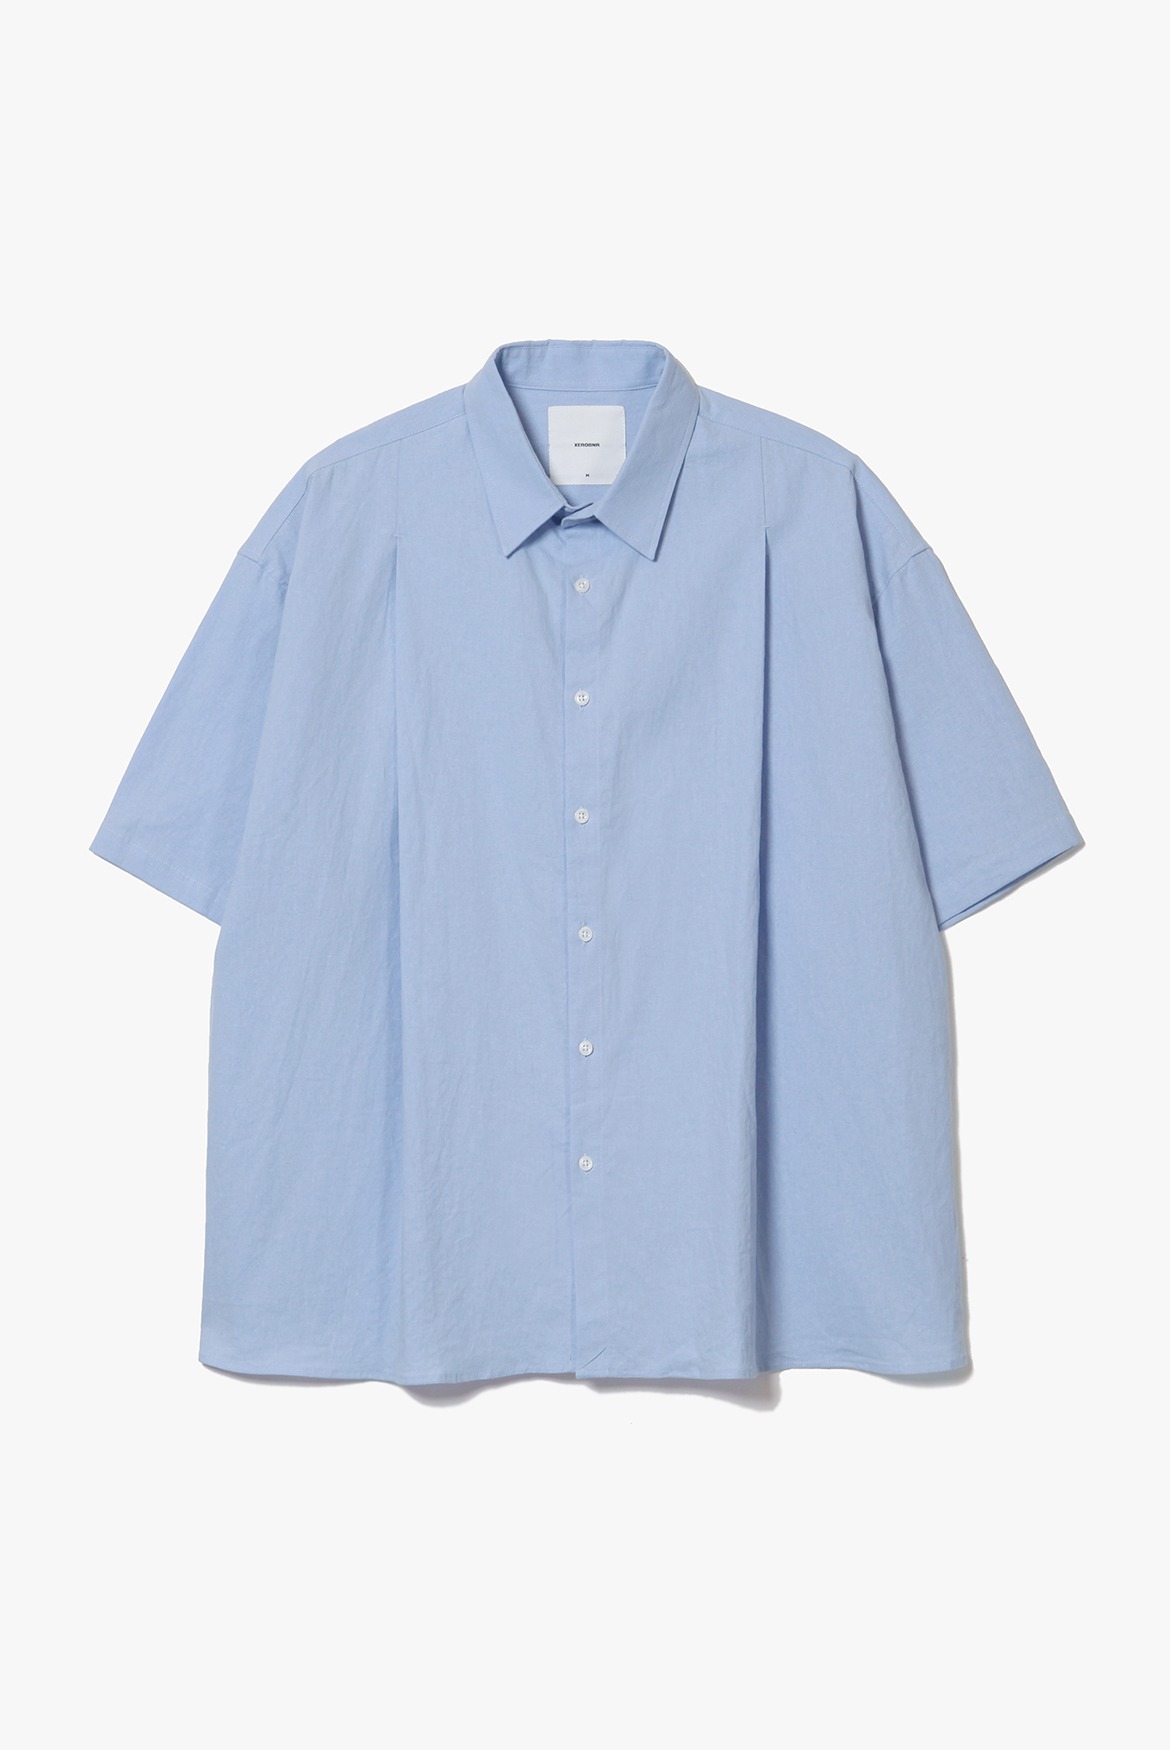 Deep Tuck Linen Shirts [Sky blue]